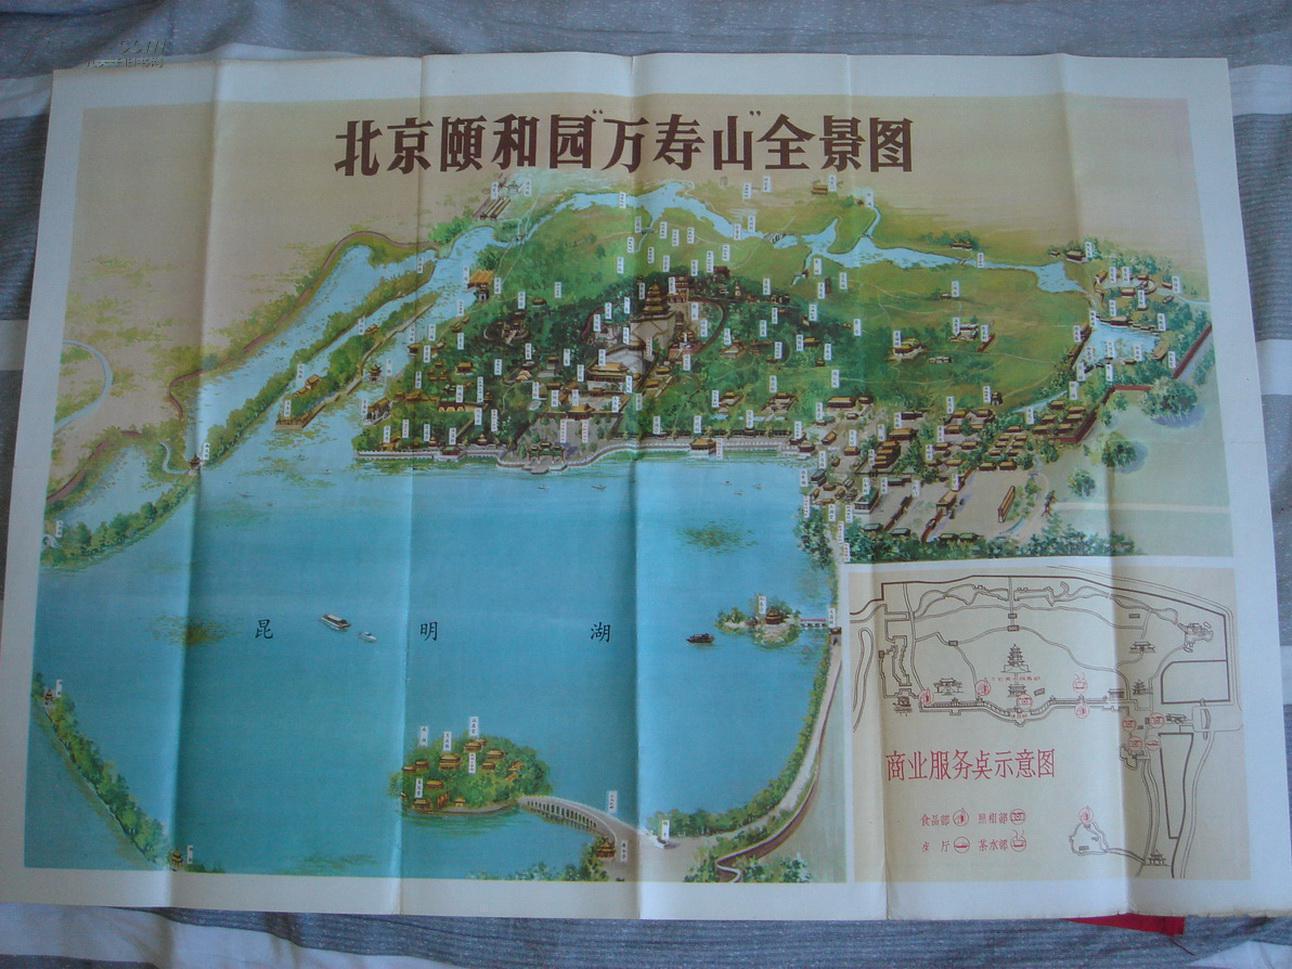 【老地图】北京颐和园"万寿山"全景图 70年代出版 拍品编号:15177610